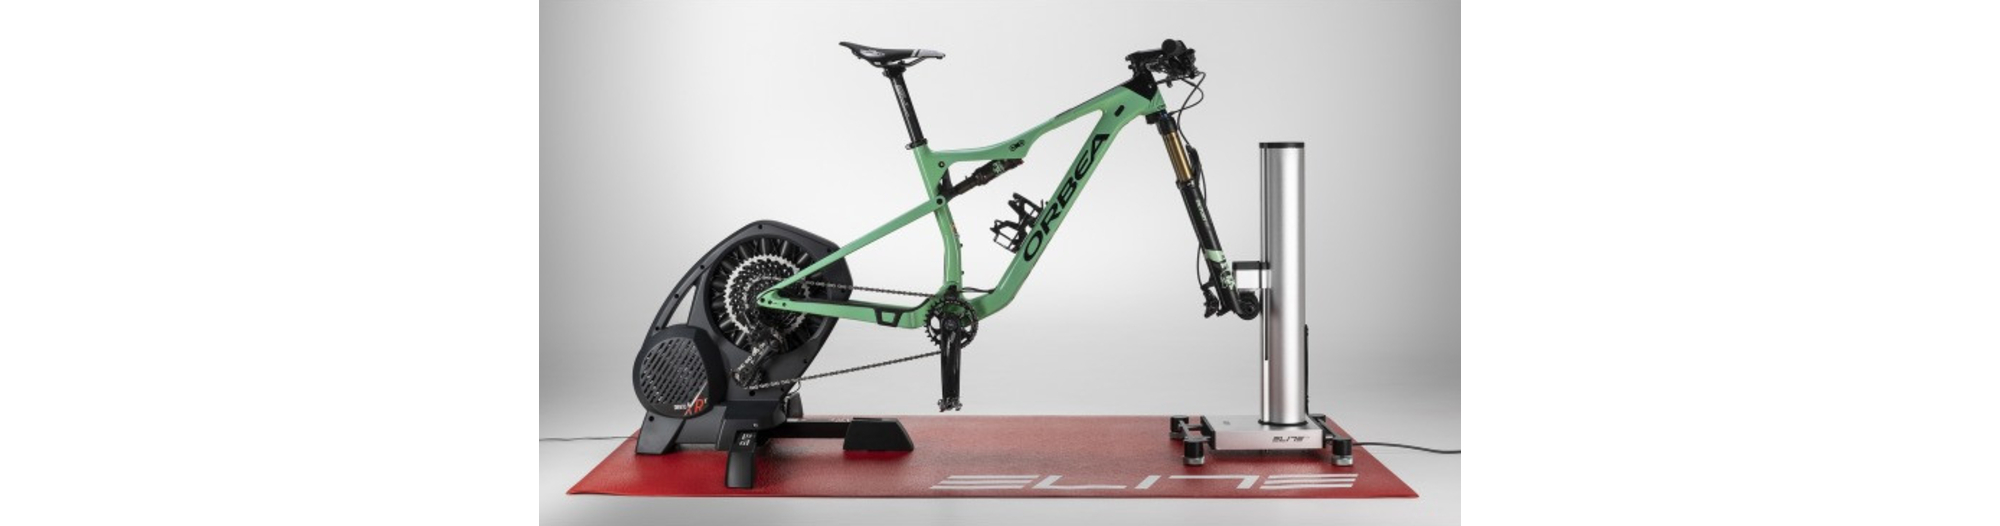 Test du simulateur de pente pour home-trainer Elite Rizer - Matos vélo,  actualités vélo de route et tests de matériel cyclisme